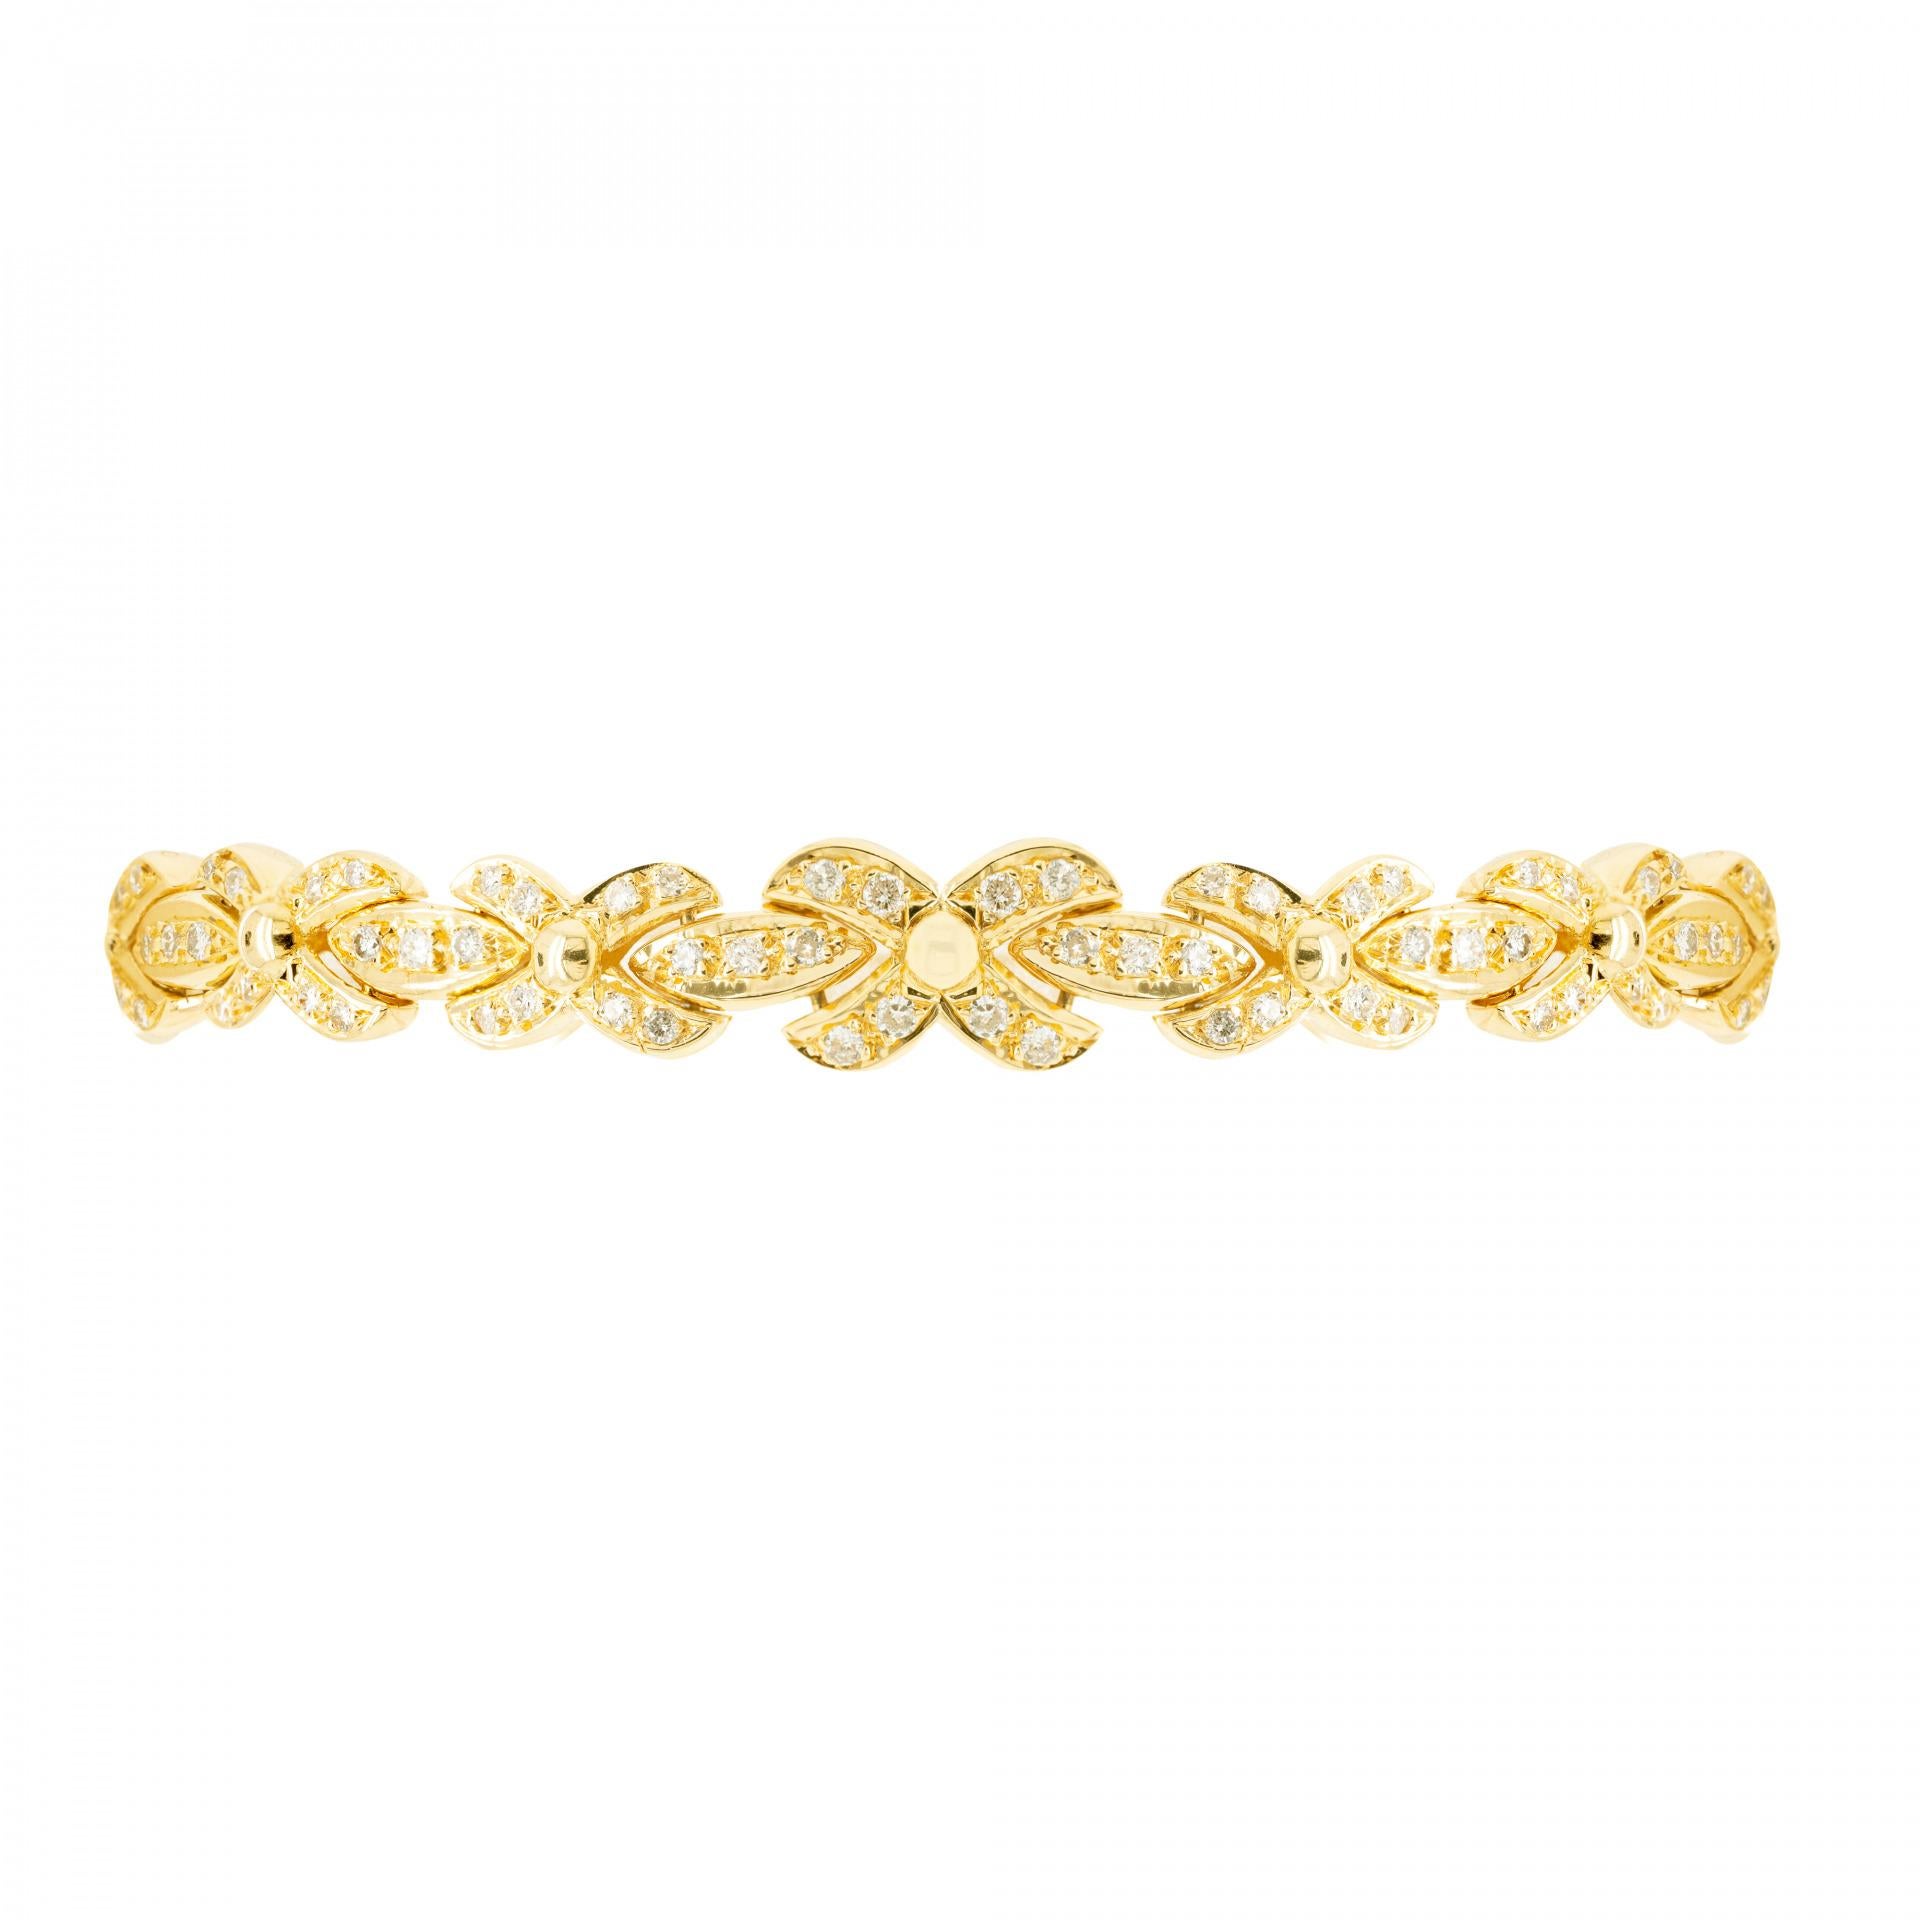 Ce merveilleux bracelet en or jaune 18 carats est conçu avec une alternance de maillons en forme de 